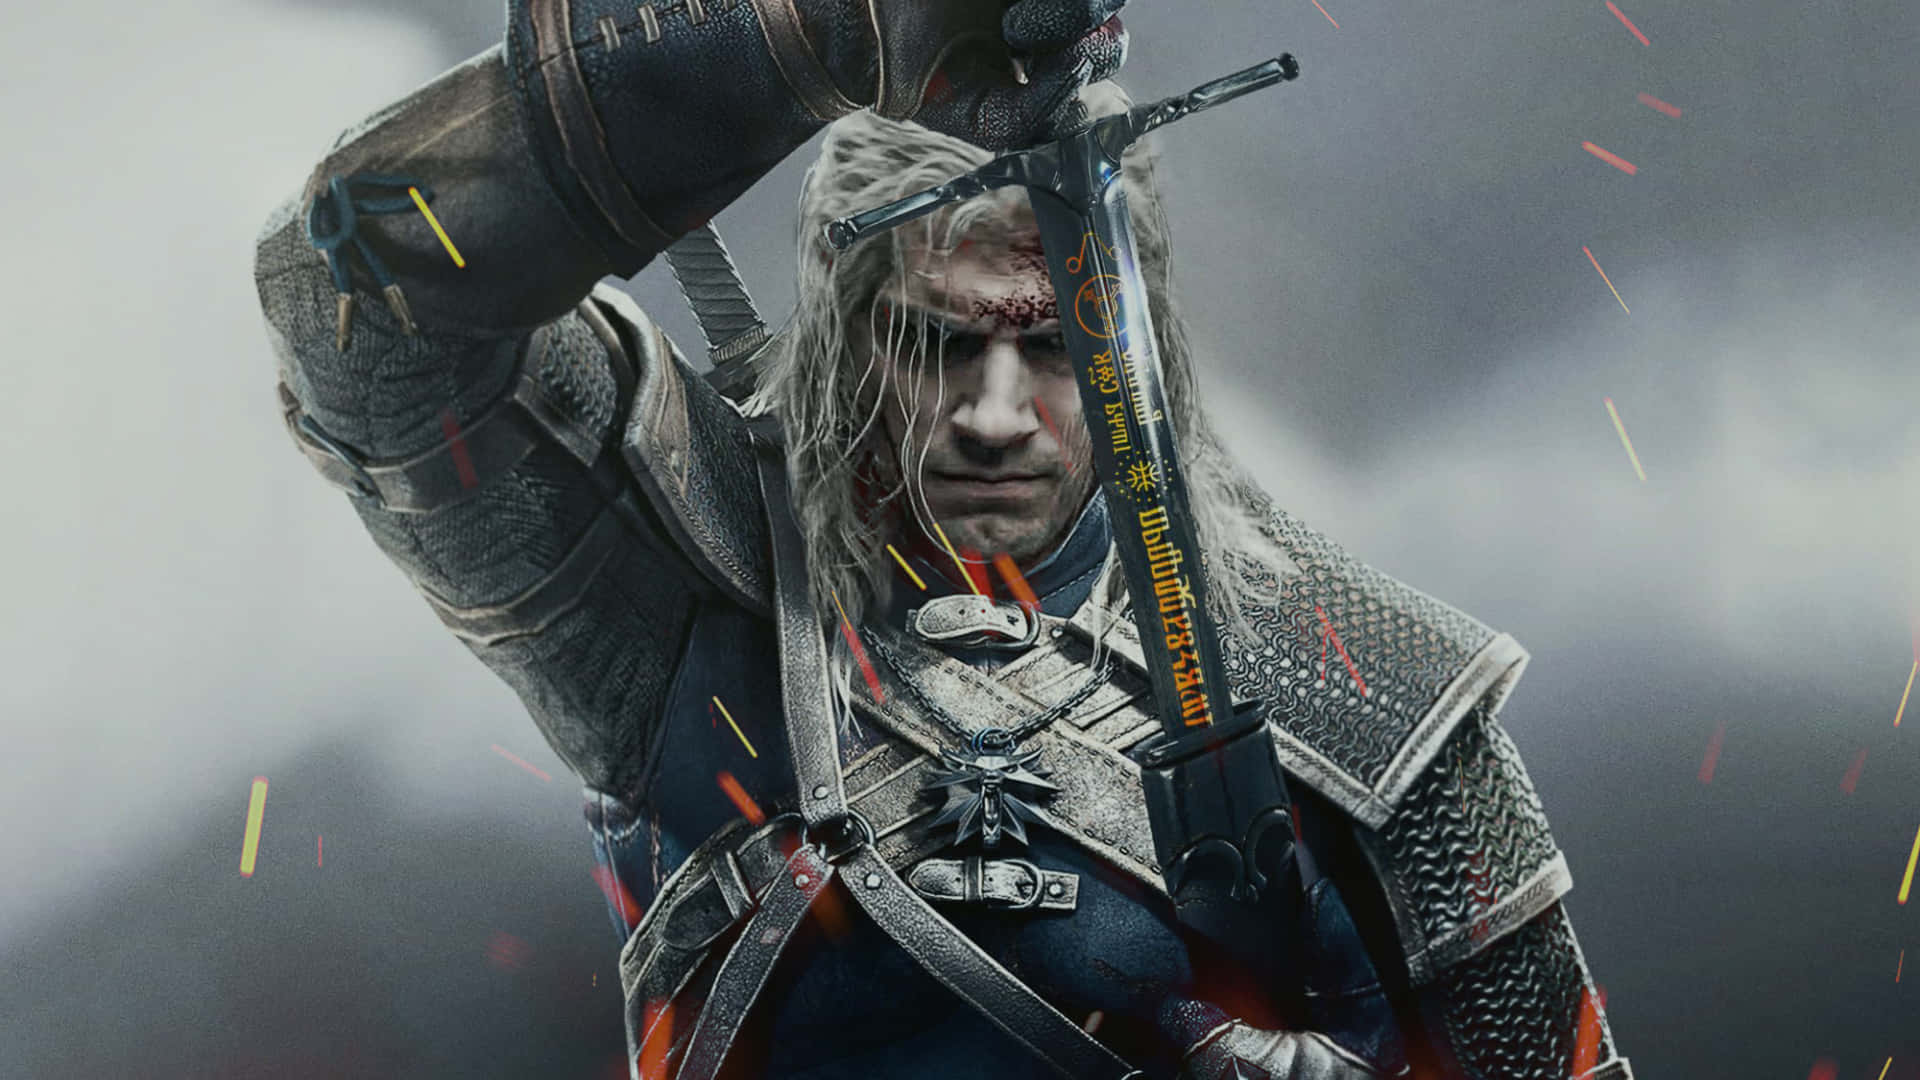 Geraltdi Rivia, Maestro Witcher In Azione.